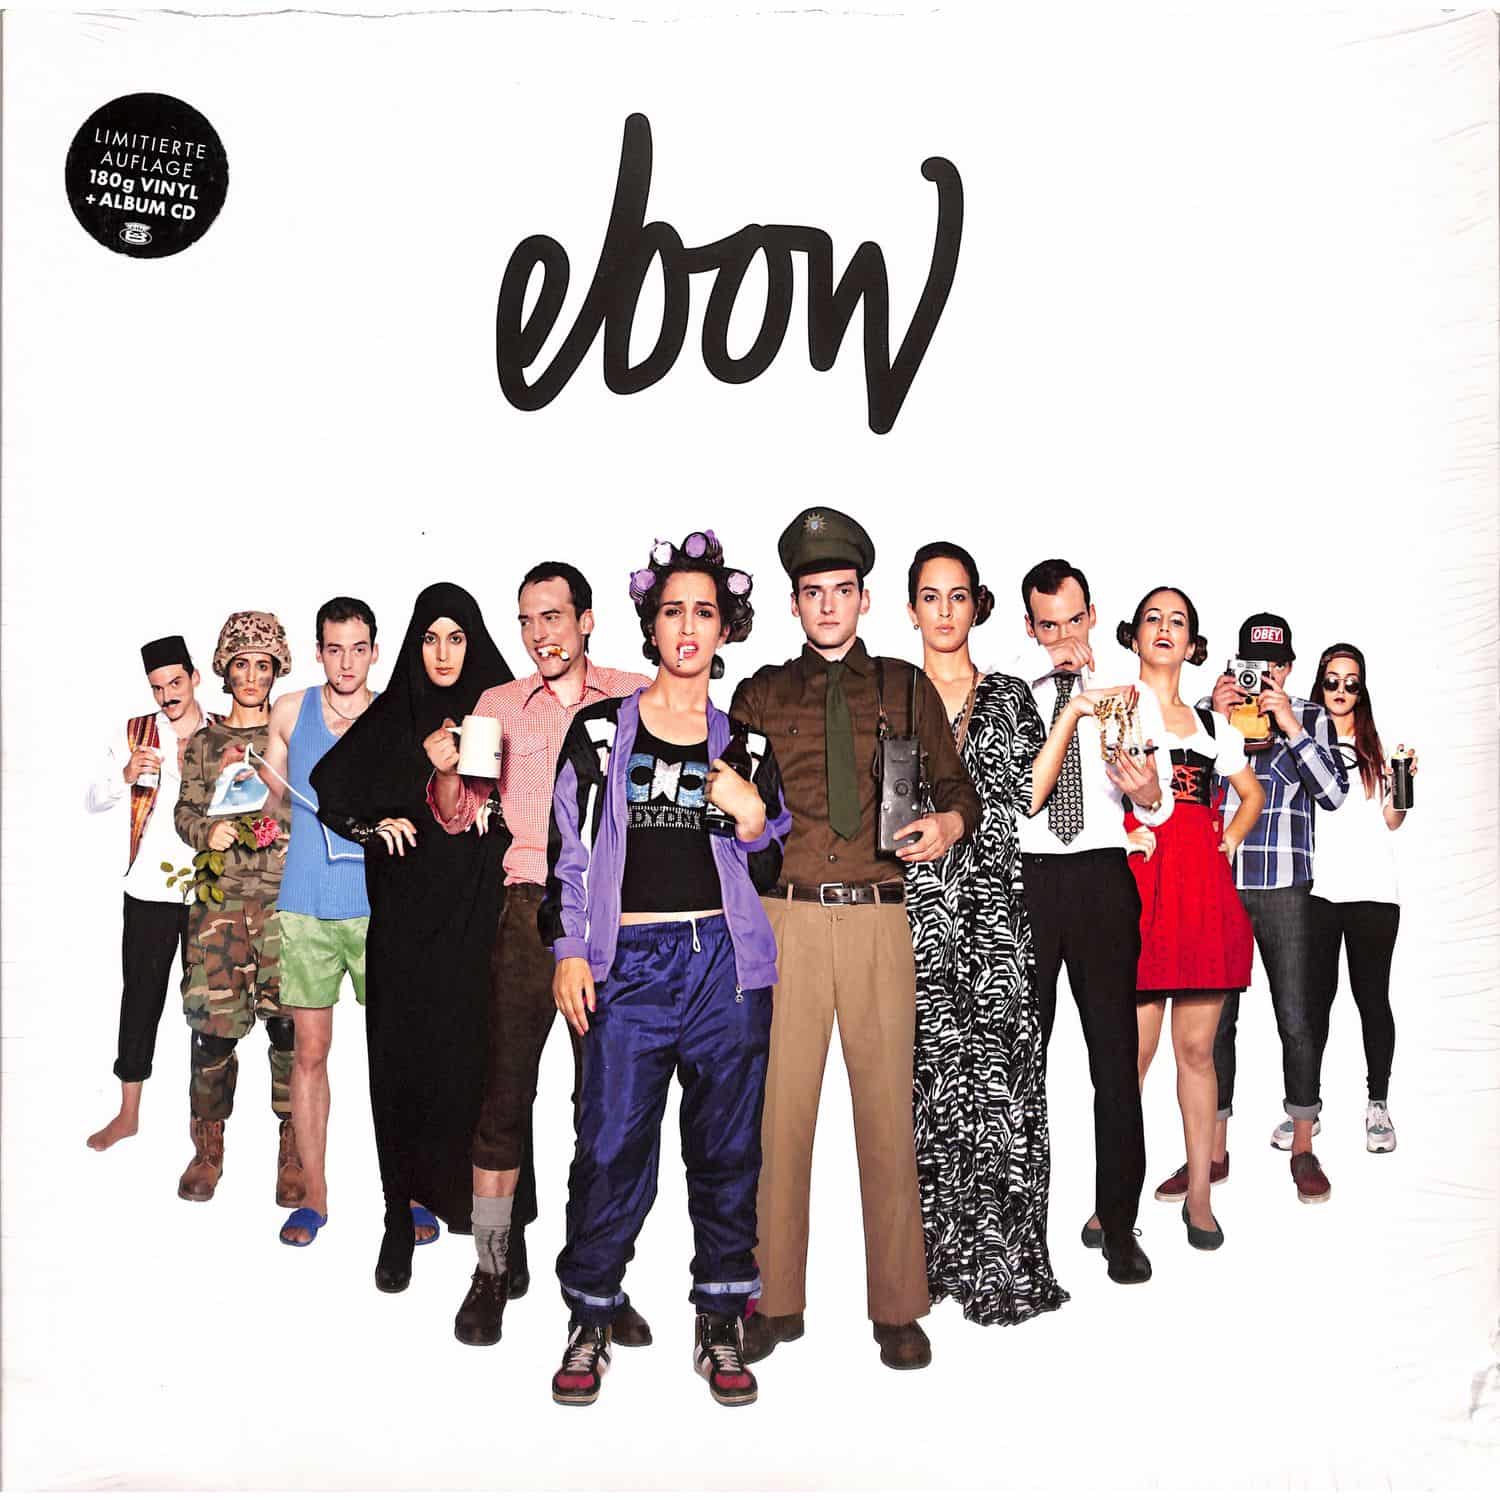 Ebow - EBOW 